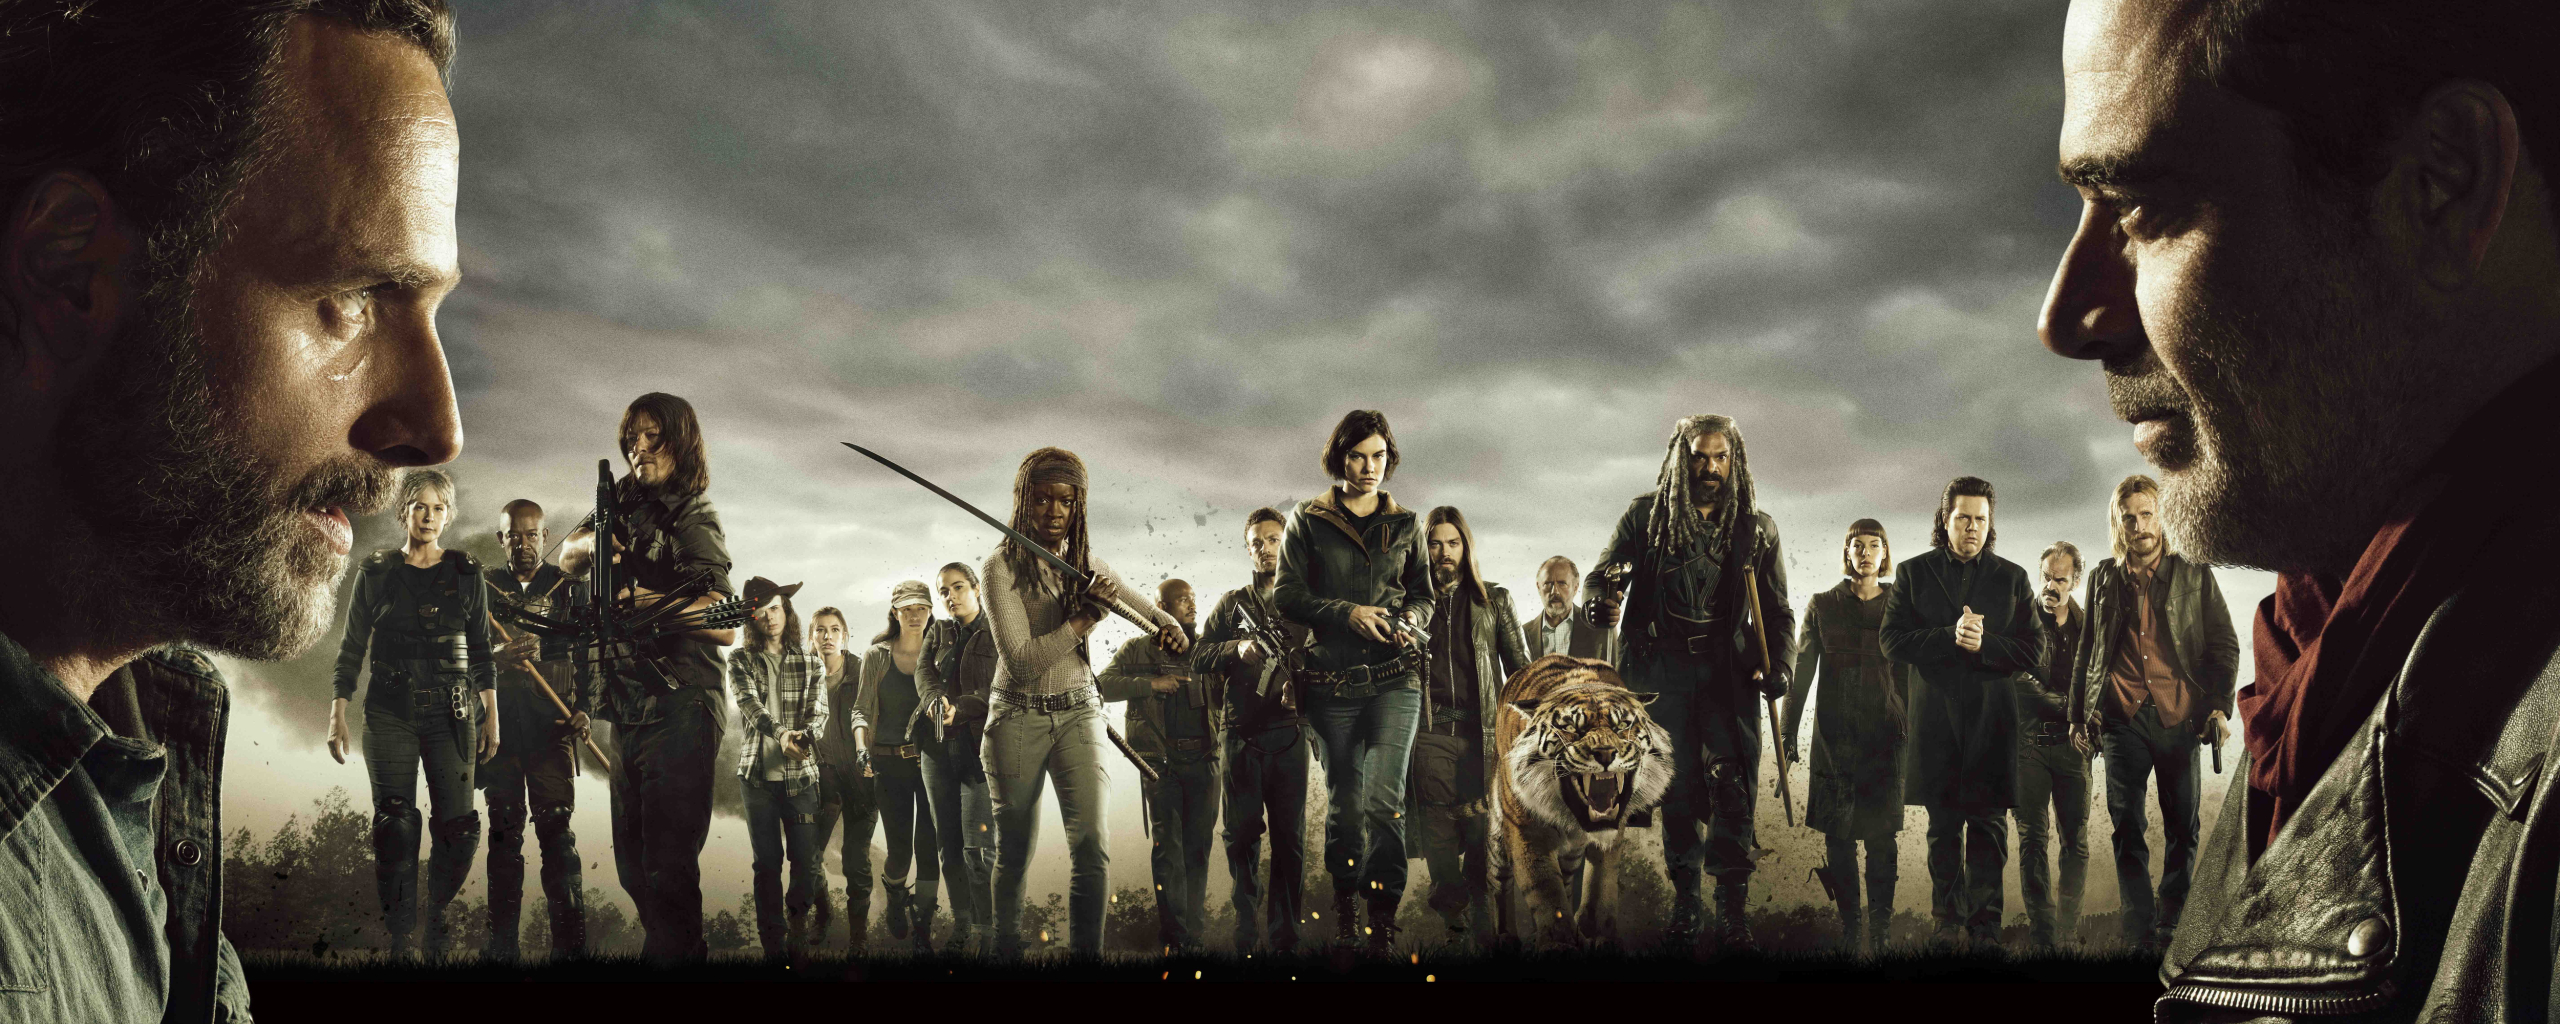 The Walking Dead Cast Wallpaper